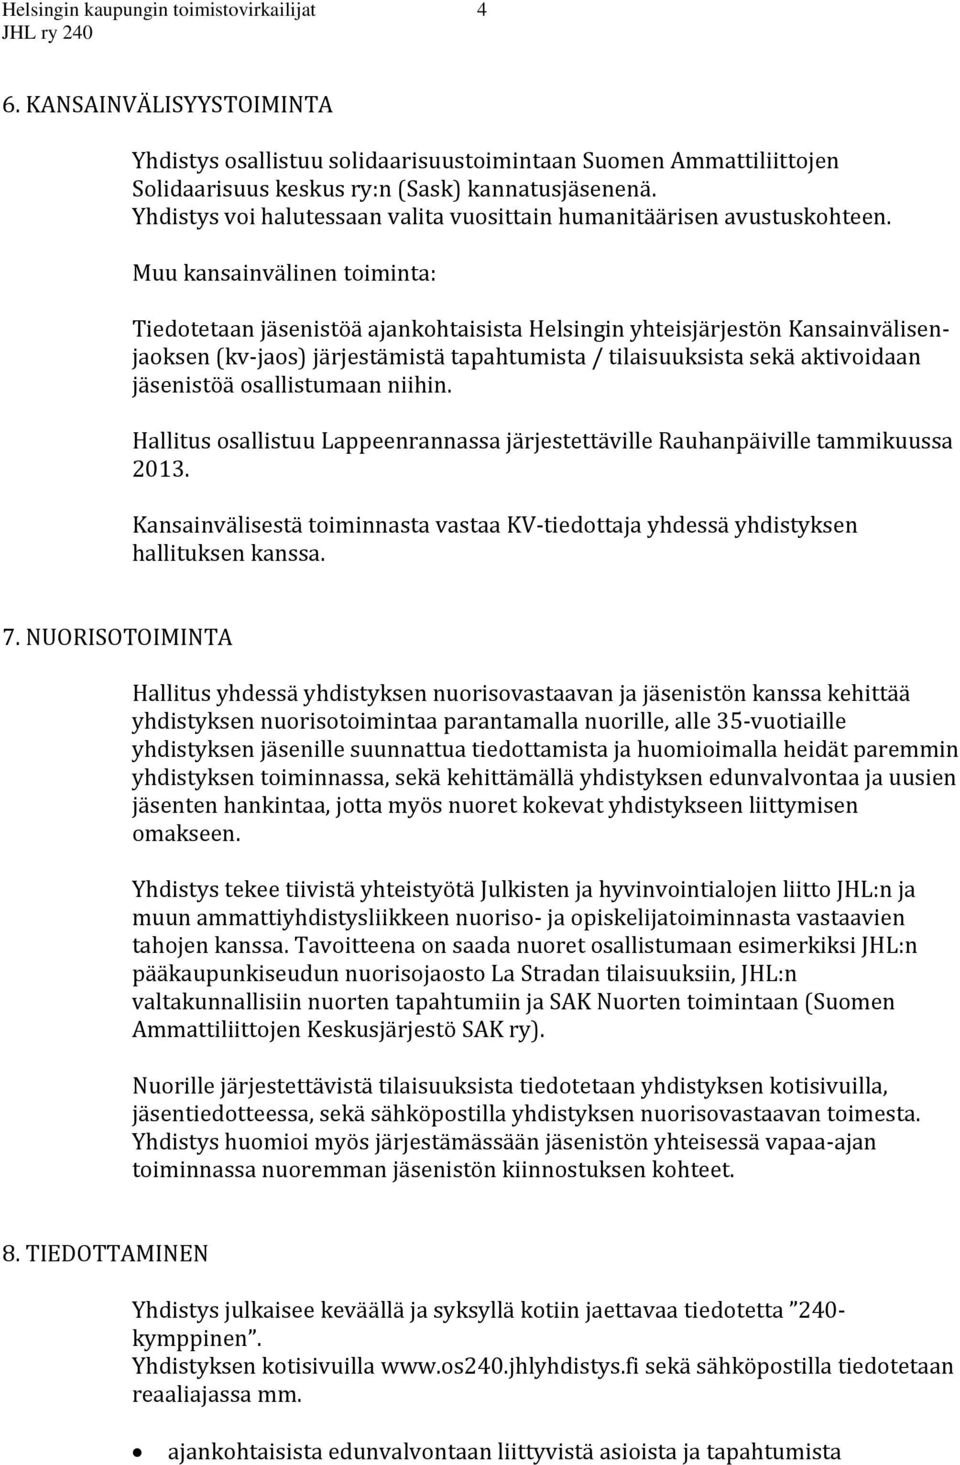 Muu kansainvälinen toiminta: Tiedotetaan jäsenistöä ajankohtaisista Helsingin yhteisjärjestön Kansainvälisenjaoksen (kv-jaos) järjestämistä tapahtumista / tilaisuuksista sekä aktivoidaan jäsenistöä